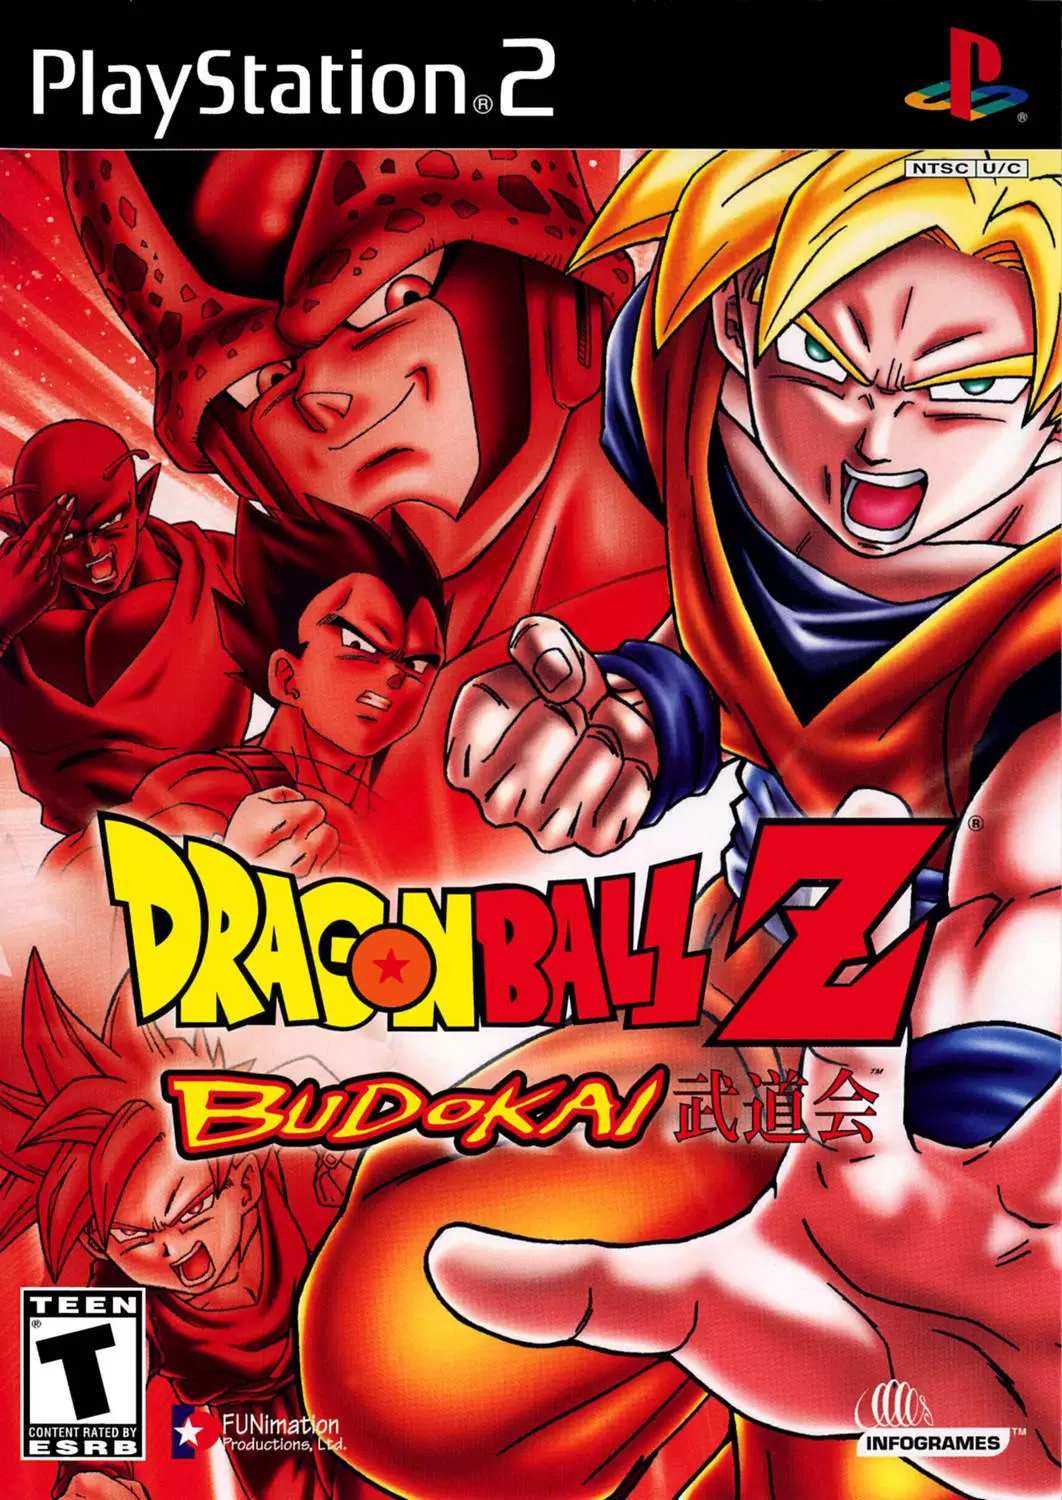 Dragon Ball Z Budokai Tenkaichi 3 2 1 Super Infinite World PS2